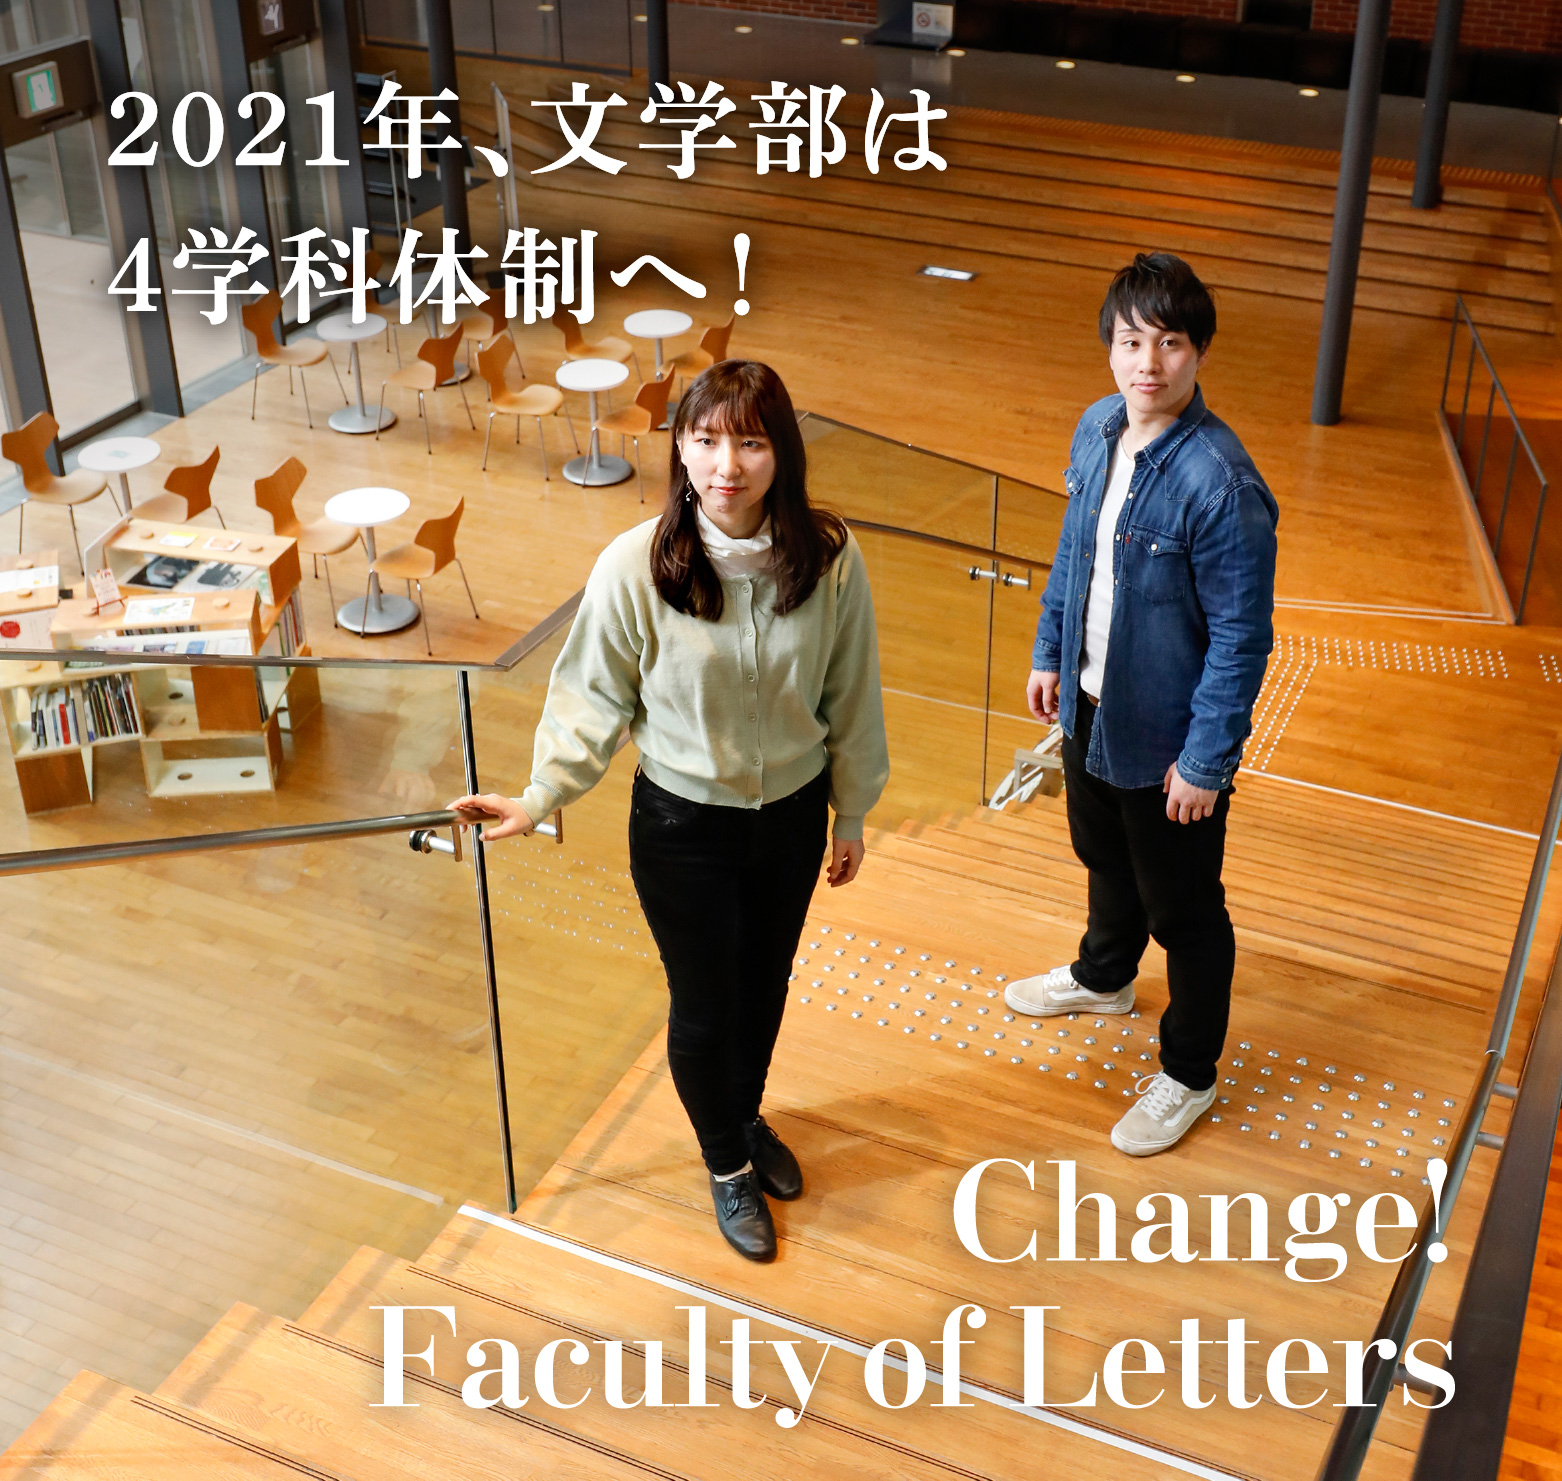 2021年、文学部は4学科体制へ！　Change！Faculty of Letters